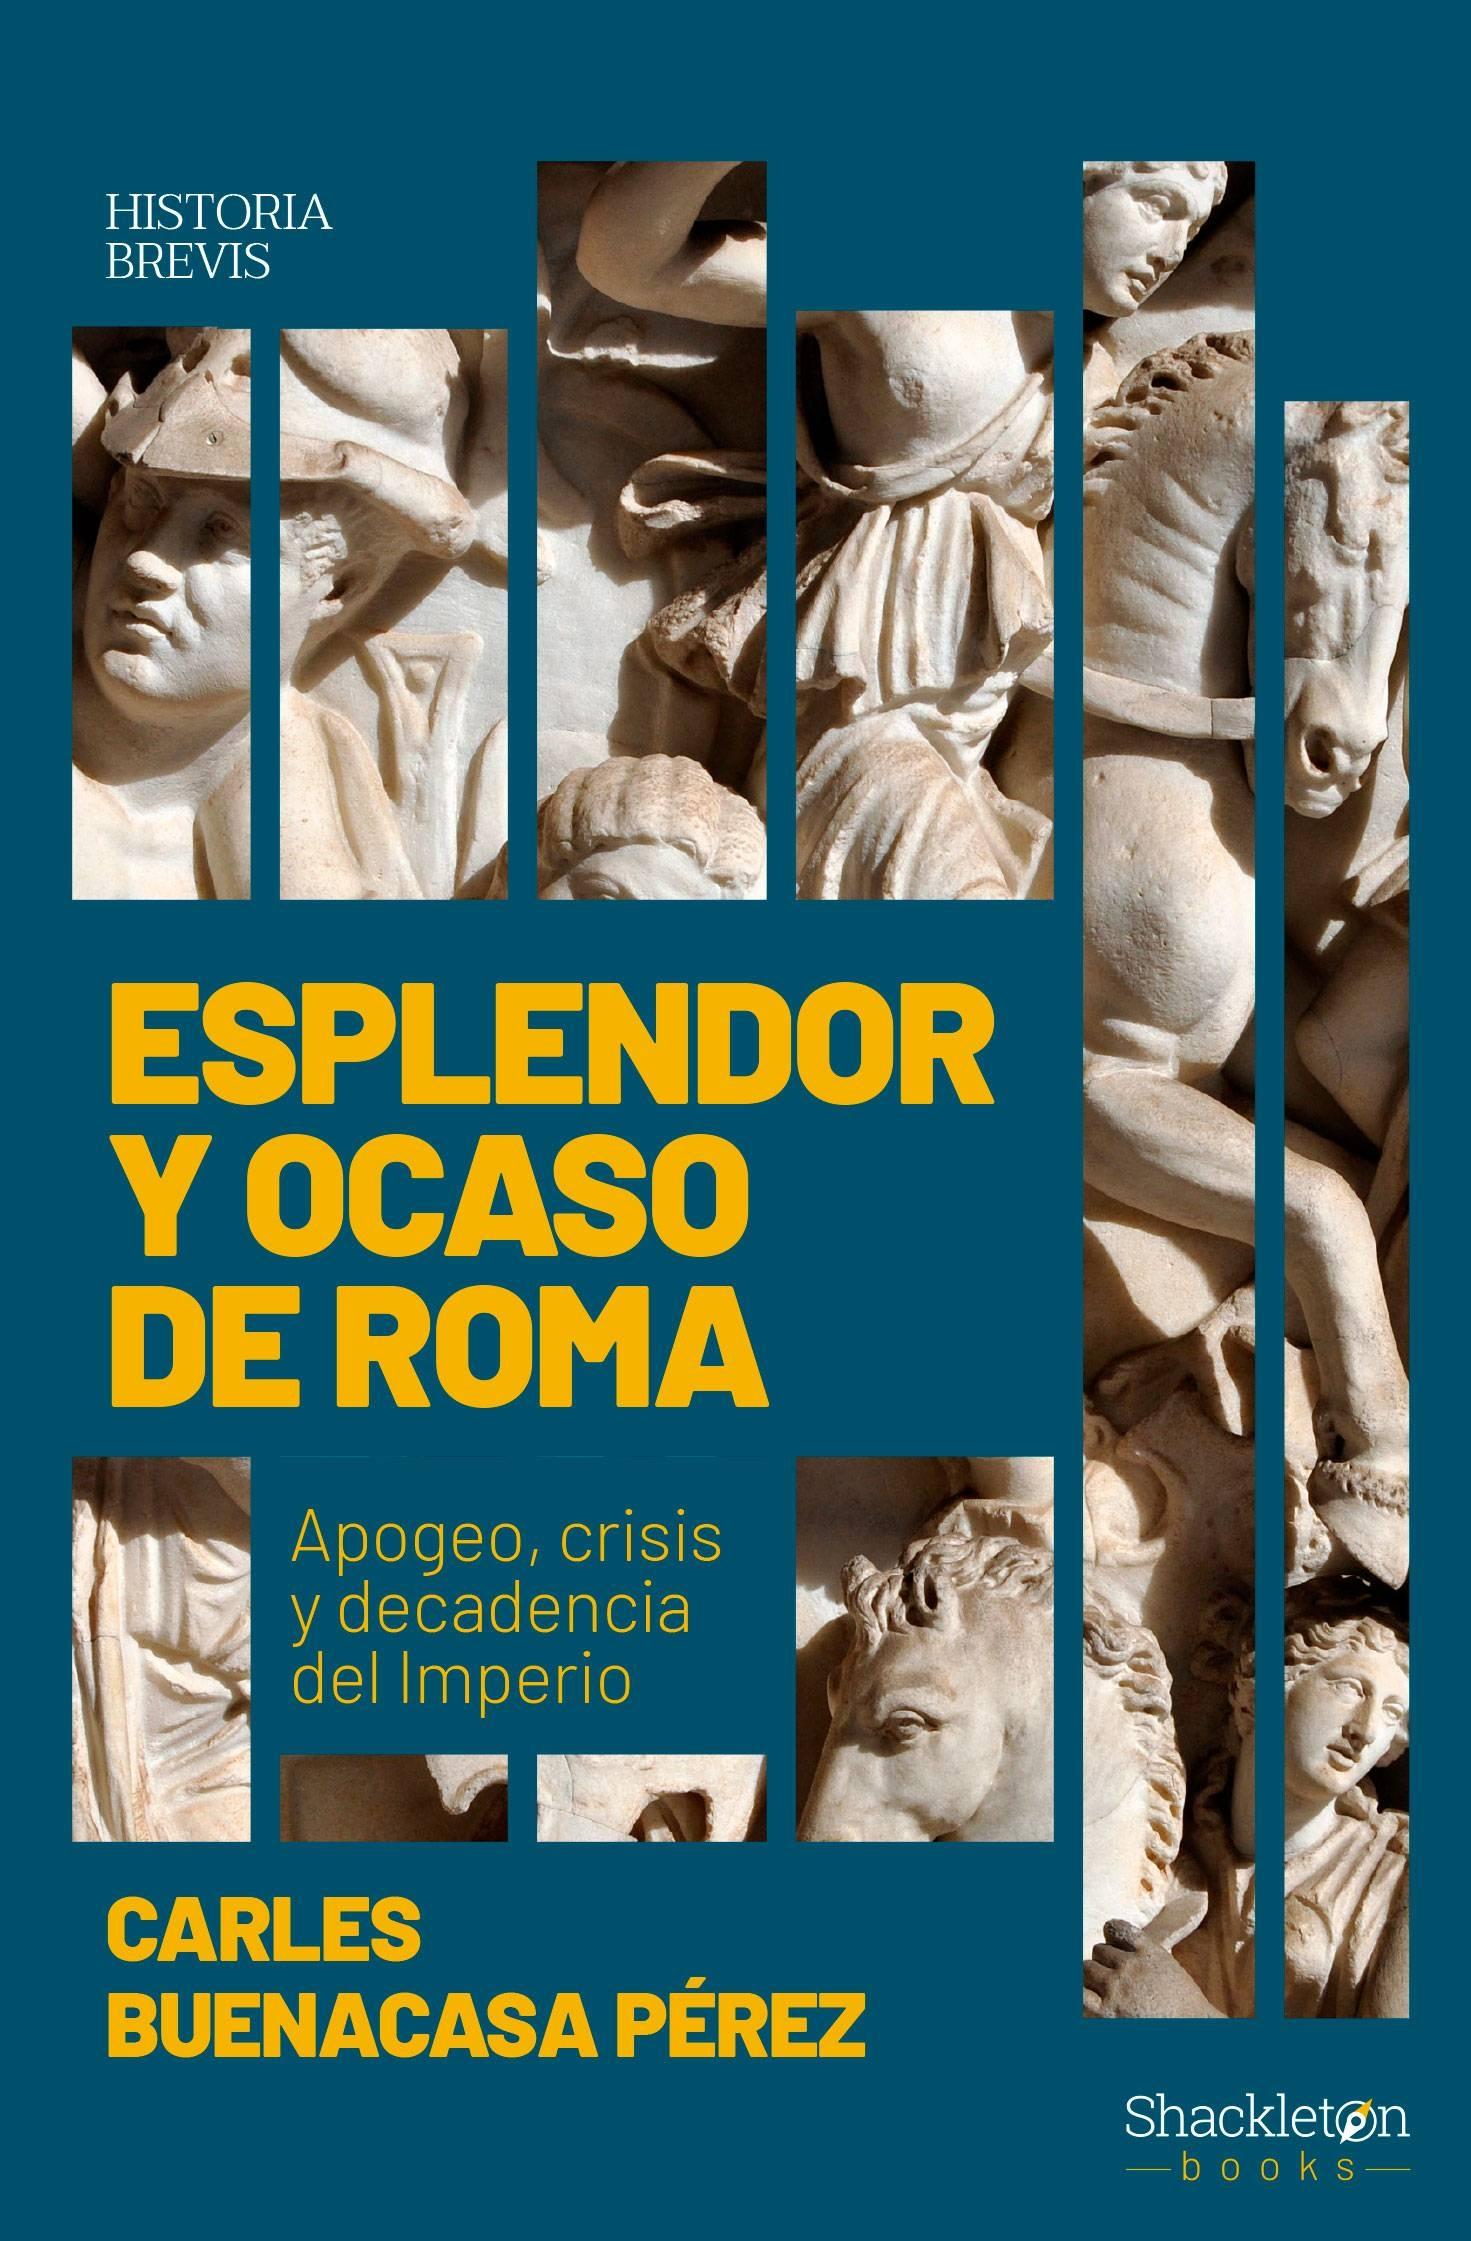 Esplendor y ocaso de Roma "Apogeo, crisis y decadencia del Imperio". 